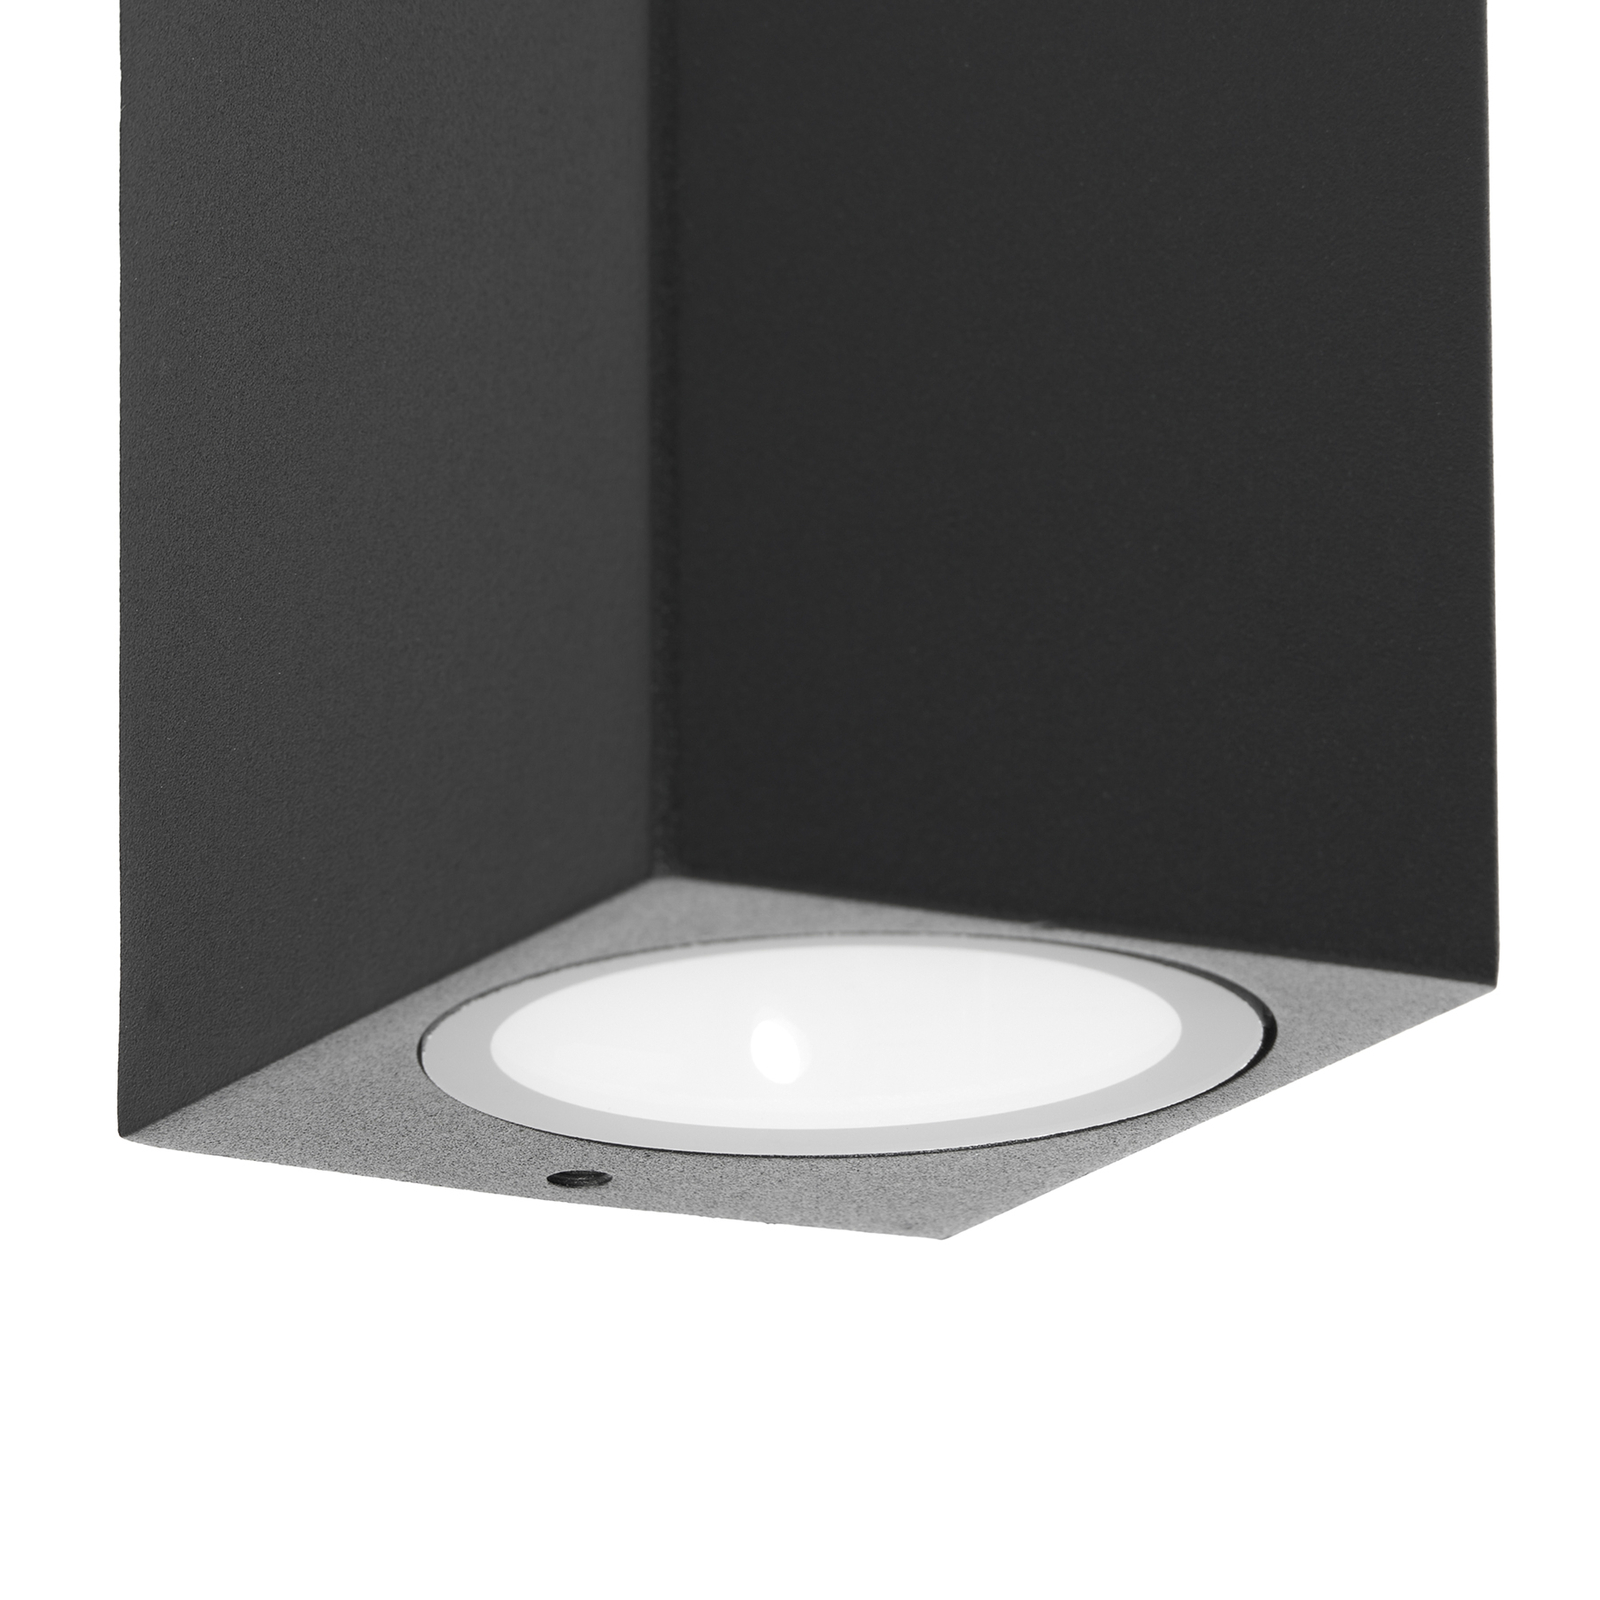 Prios kültéri fali lámpa Tetje, fekete, szögletes, 16 cm-es, szögletes